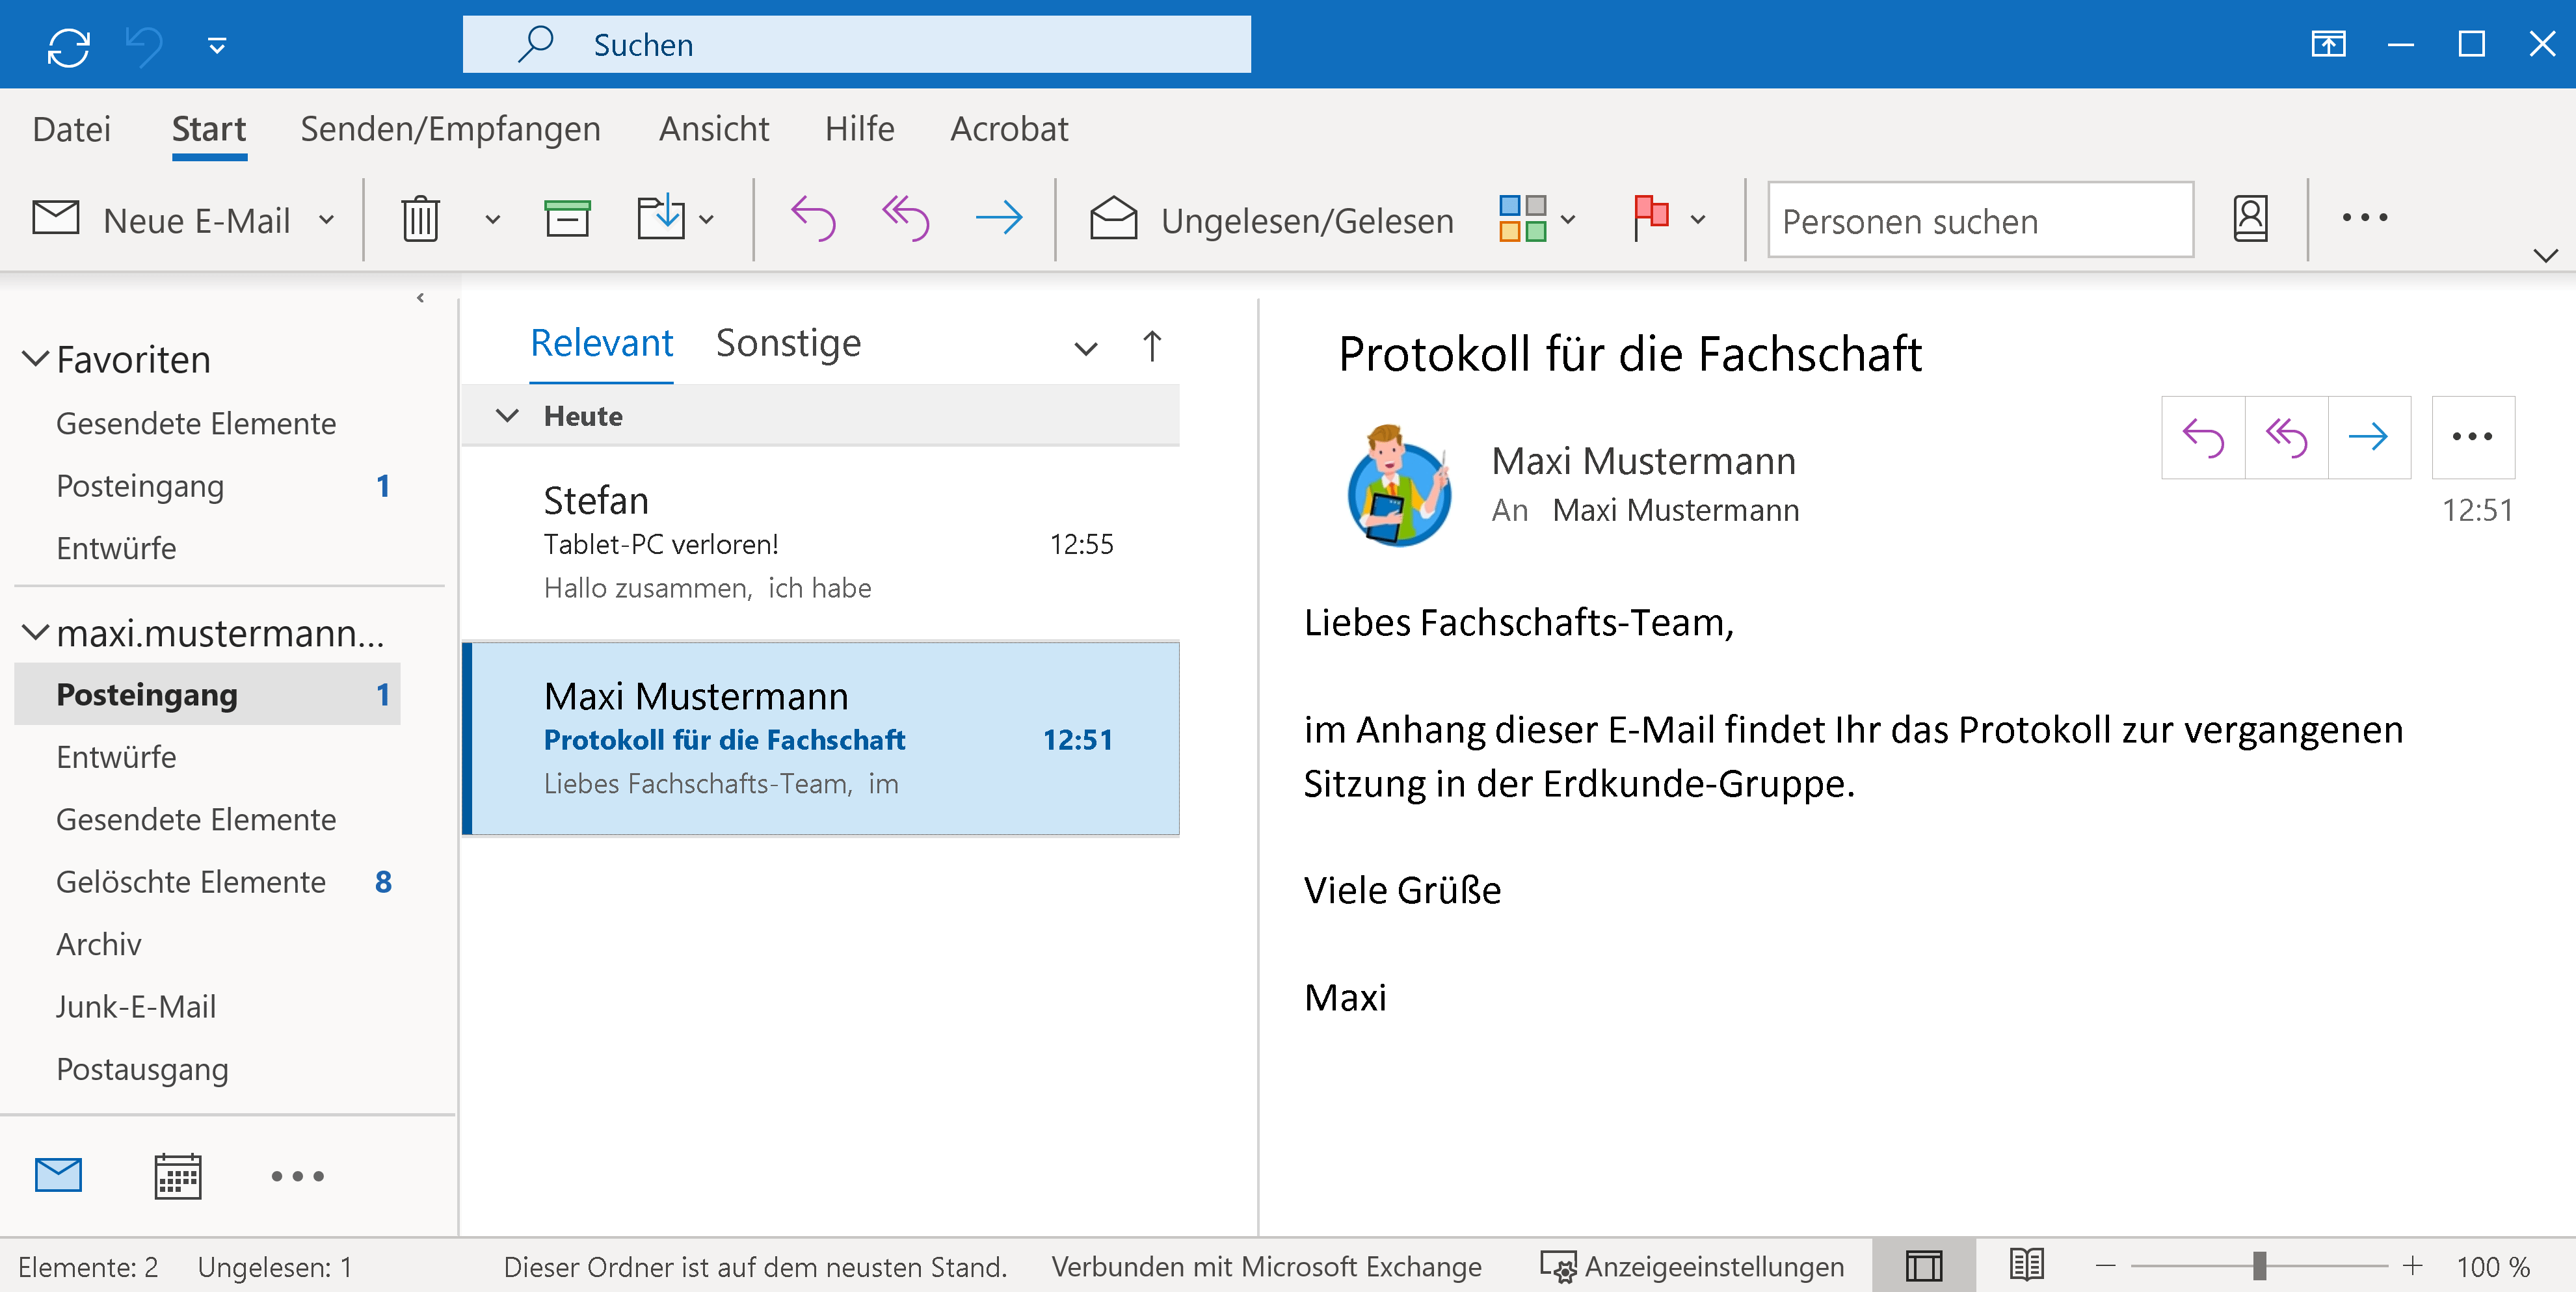 Outlook als Desktop-Programm